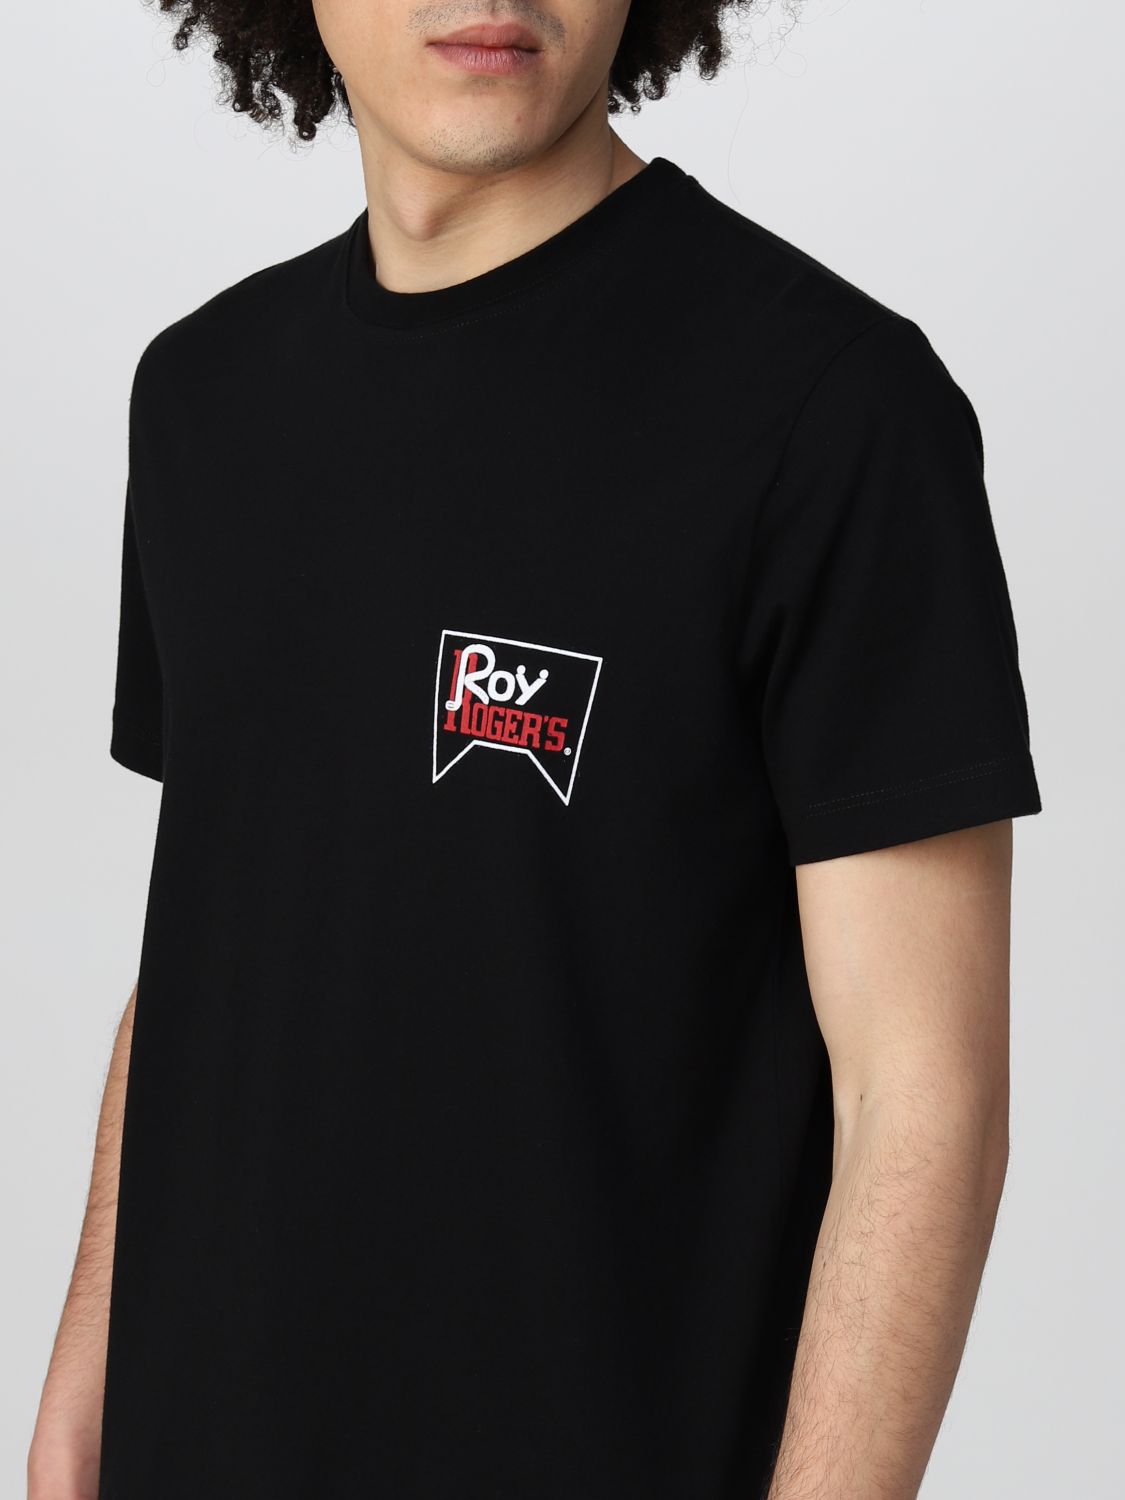 T-Shirt Roy Rogers: T-shirt herren Roy Rogers schwarz 3